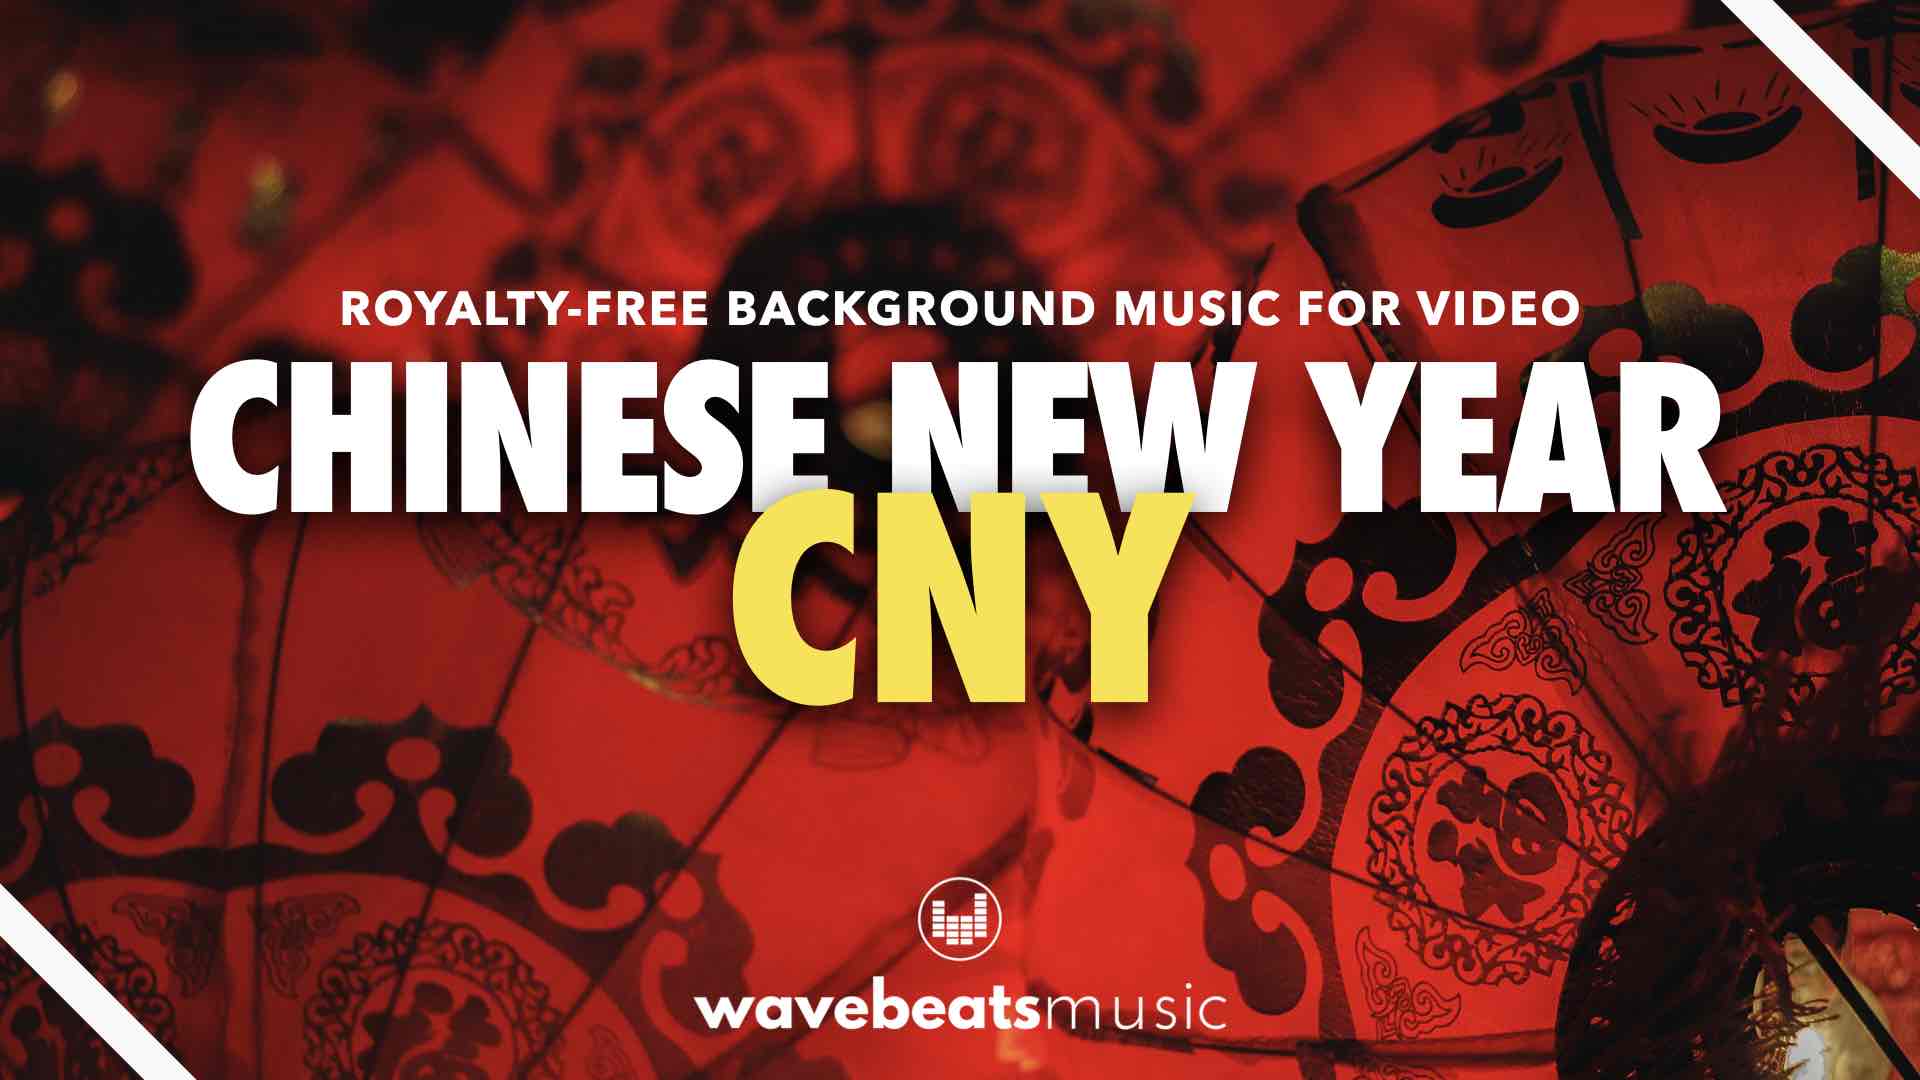 Âm nhạc nền Tết Trung Quốc (CNY) của WavebeatsMusic | AudioJungle là một trong những lựa chọn hoàn hảo để thêm chất lượng cho video của bạn. Âm nhạc Tết Trung Quốc được lồng ghép những giai điệu truyền thống, đầy cảm hứng và sự giàu nét văn hóa của quốc gia đông dân nhất thế giới. Với âm nhạc nền Tết của WavebeatsMusic, chắc chắn sẽ mang đến cho video Tết mới của bạn những giây phút thật sôi động và đáng nhớ.